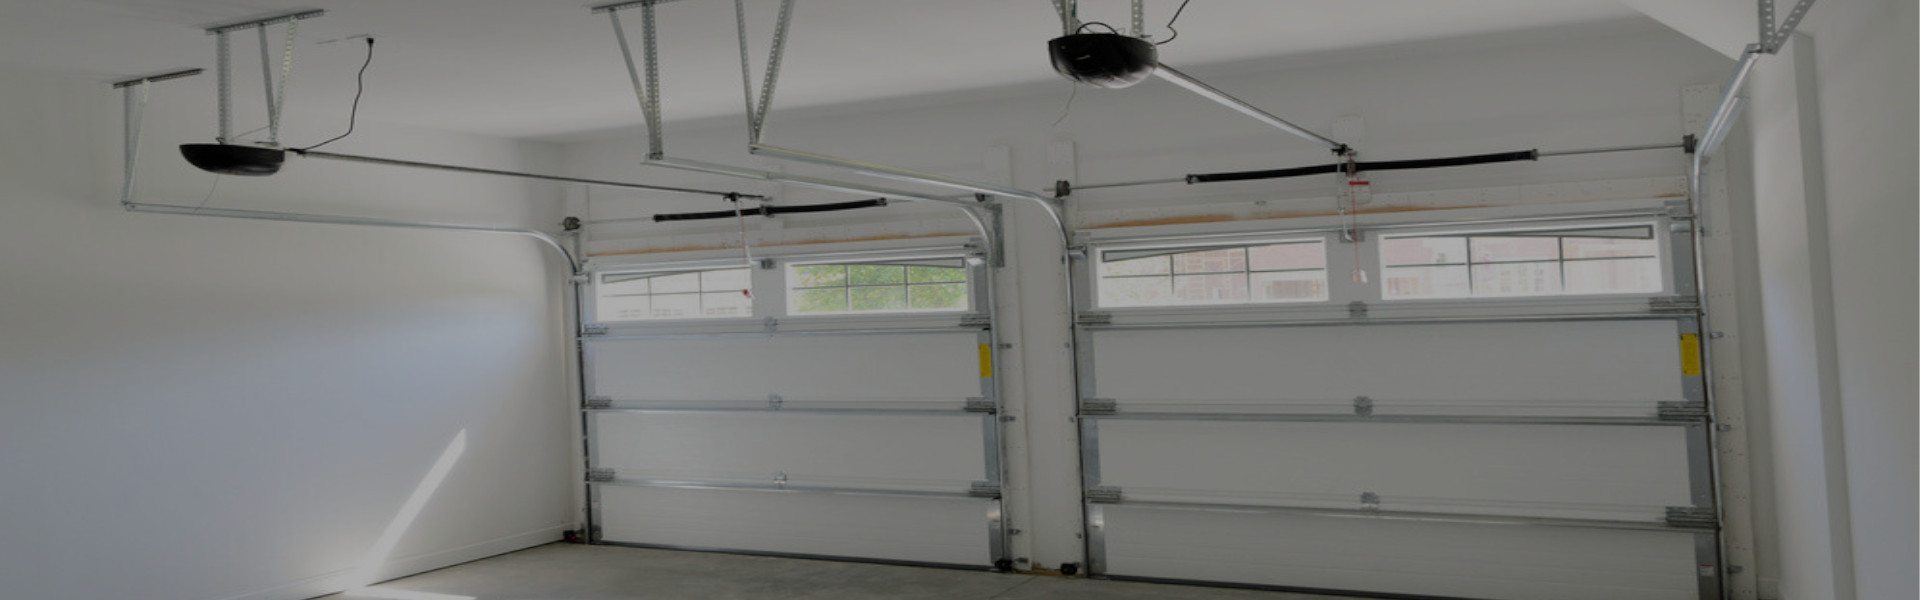 Slider Garage Door Repair, Glaziers in Chadwell Heath, Little Heath, RM6